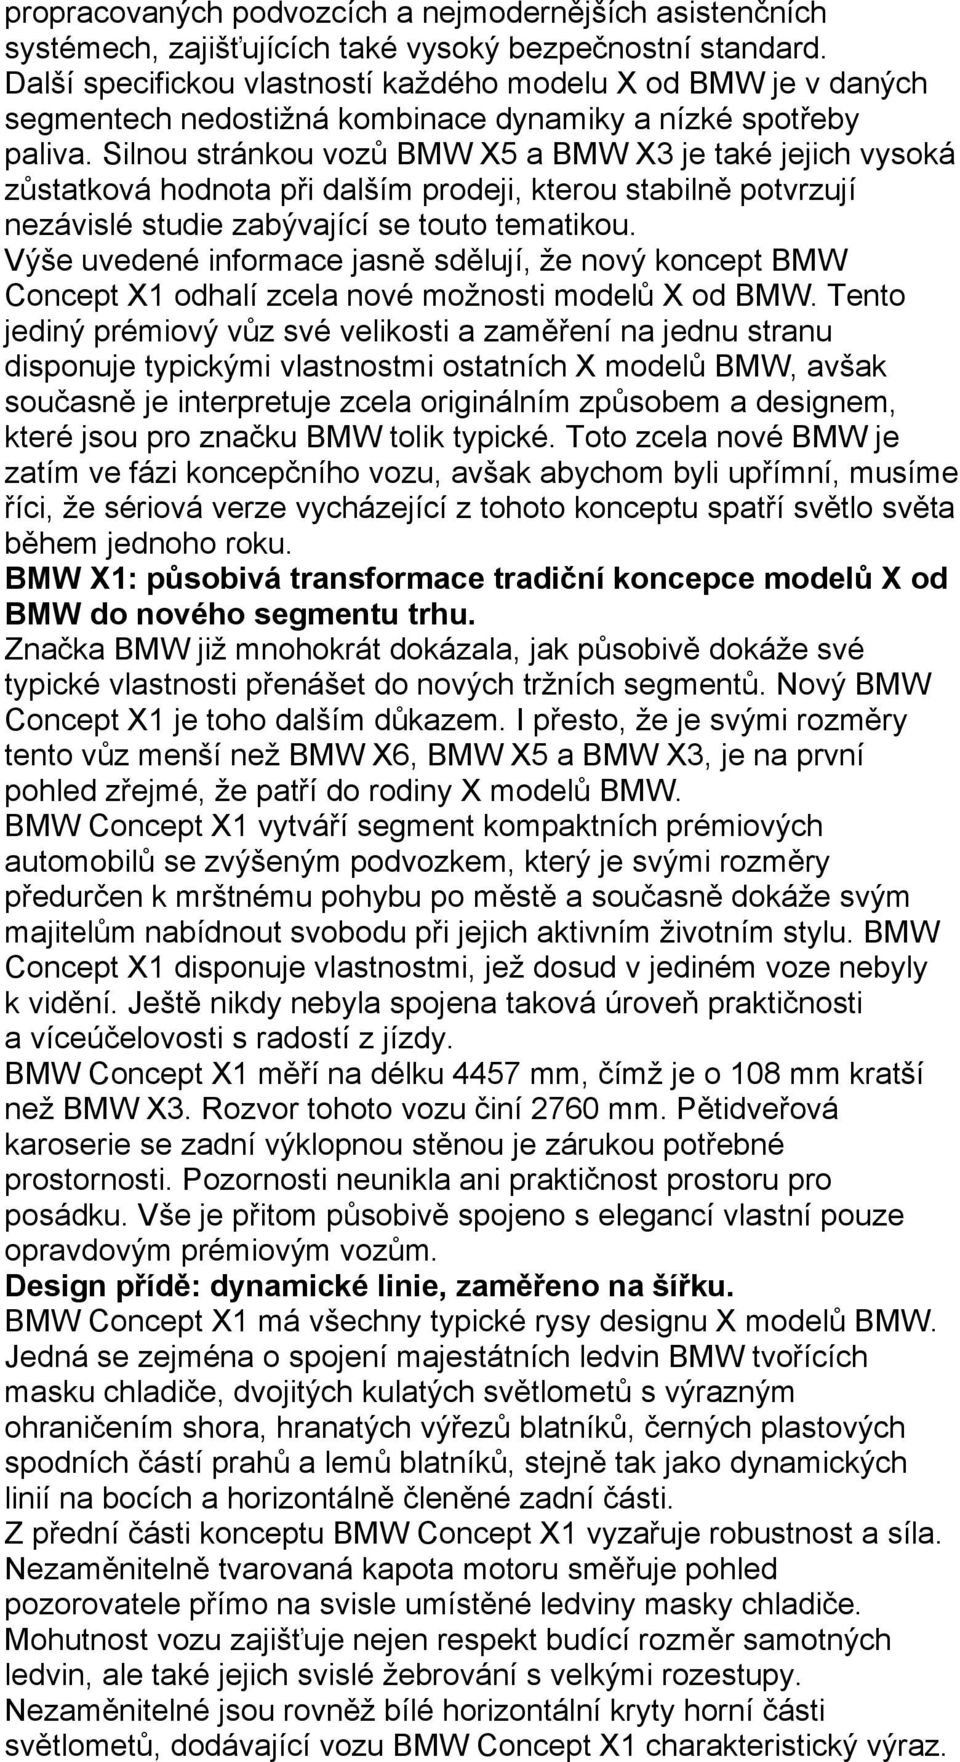 Silnou stránkou vozů BMW X5 a BMW X3 je také jejich vysoká zůstatková hodnota při dalším prodeji, kterou stabilně potvrzují nezávislé studie zabývající se touto tematikou.